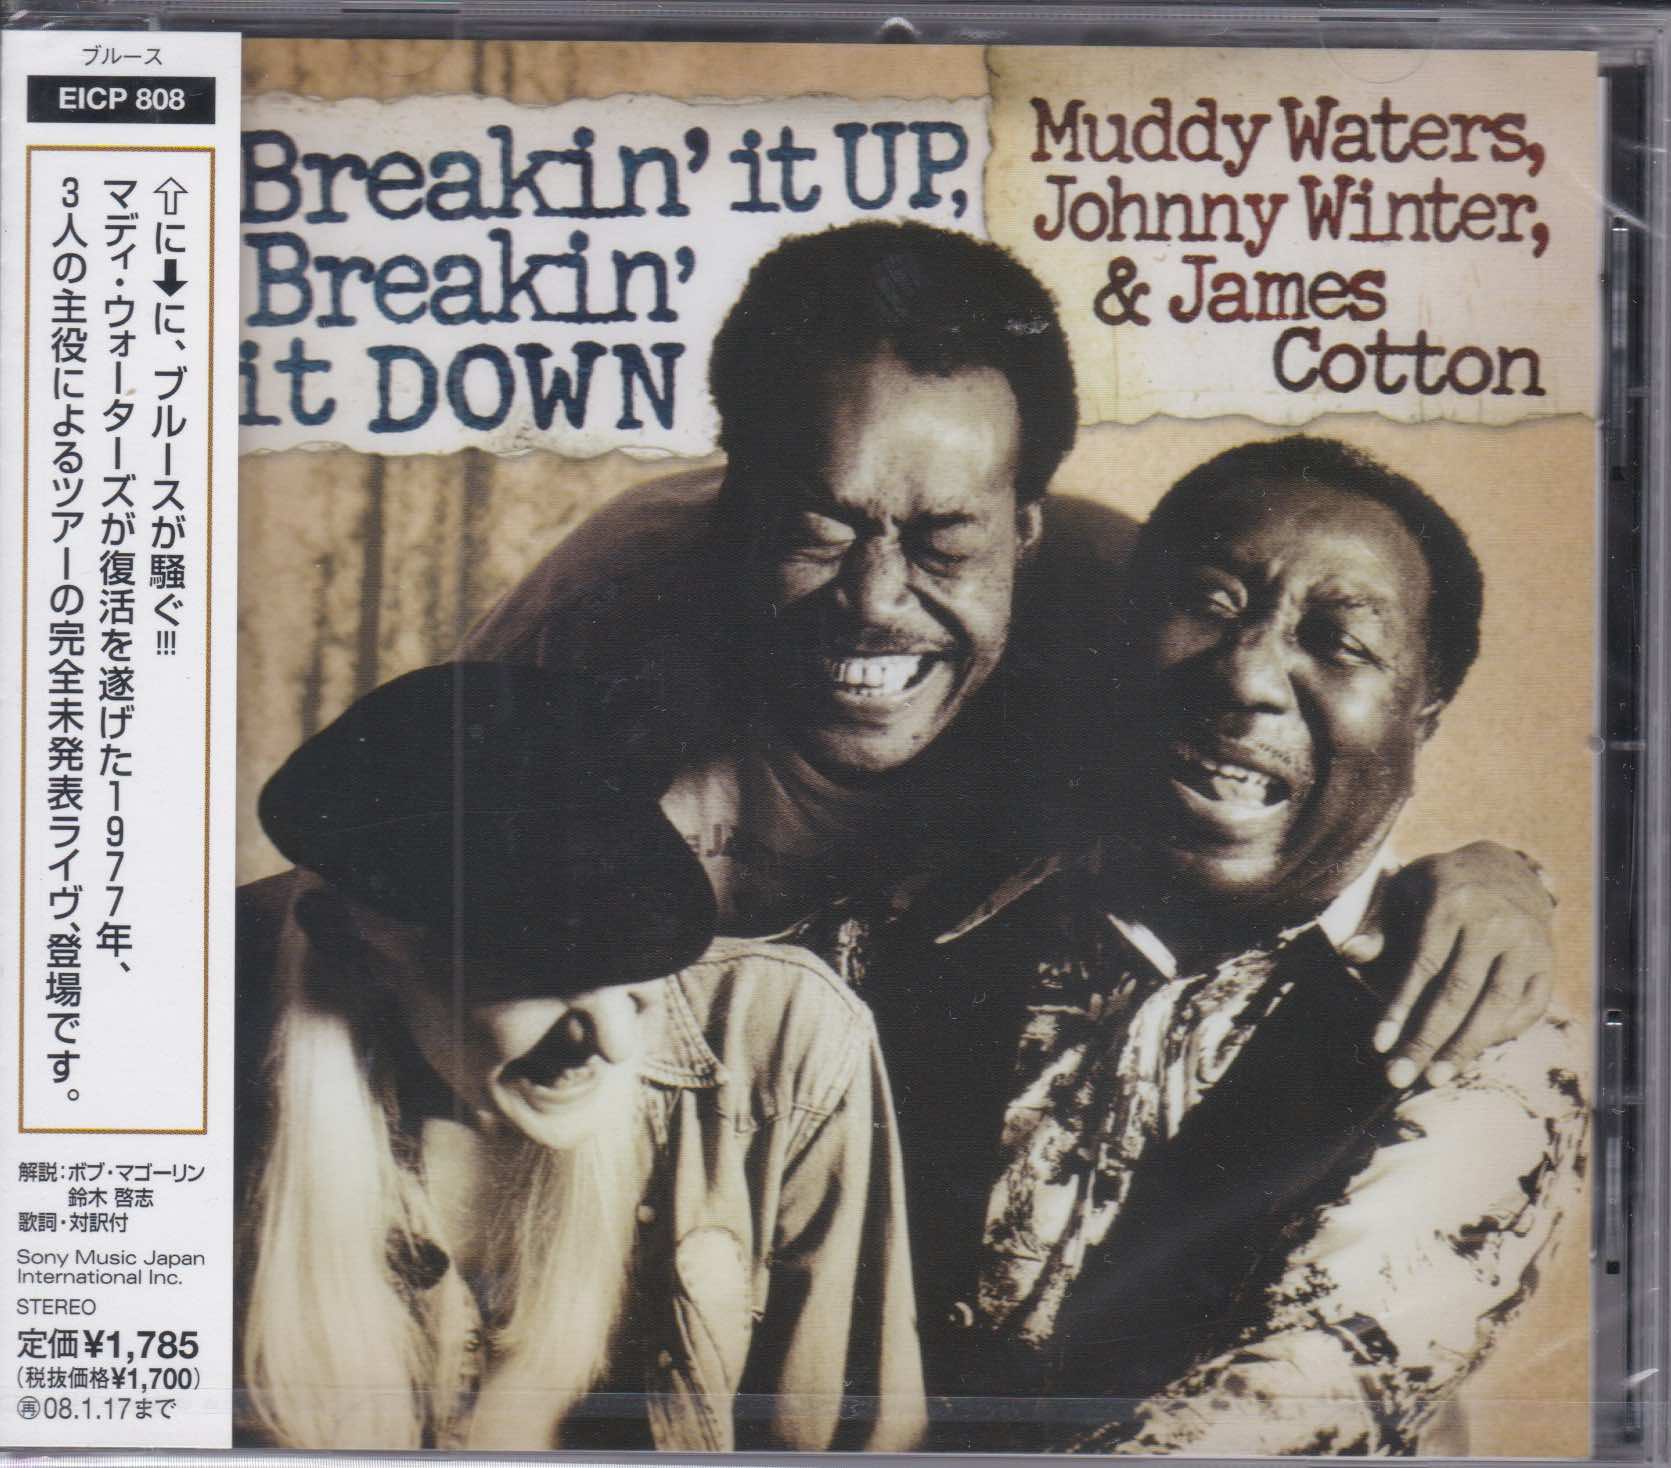 Muddy Waters, Johnny Winter & James Cotton ‎– Breakin' It Up, Breakin' It Down